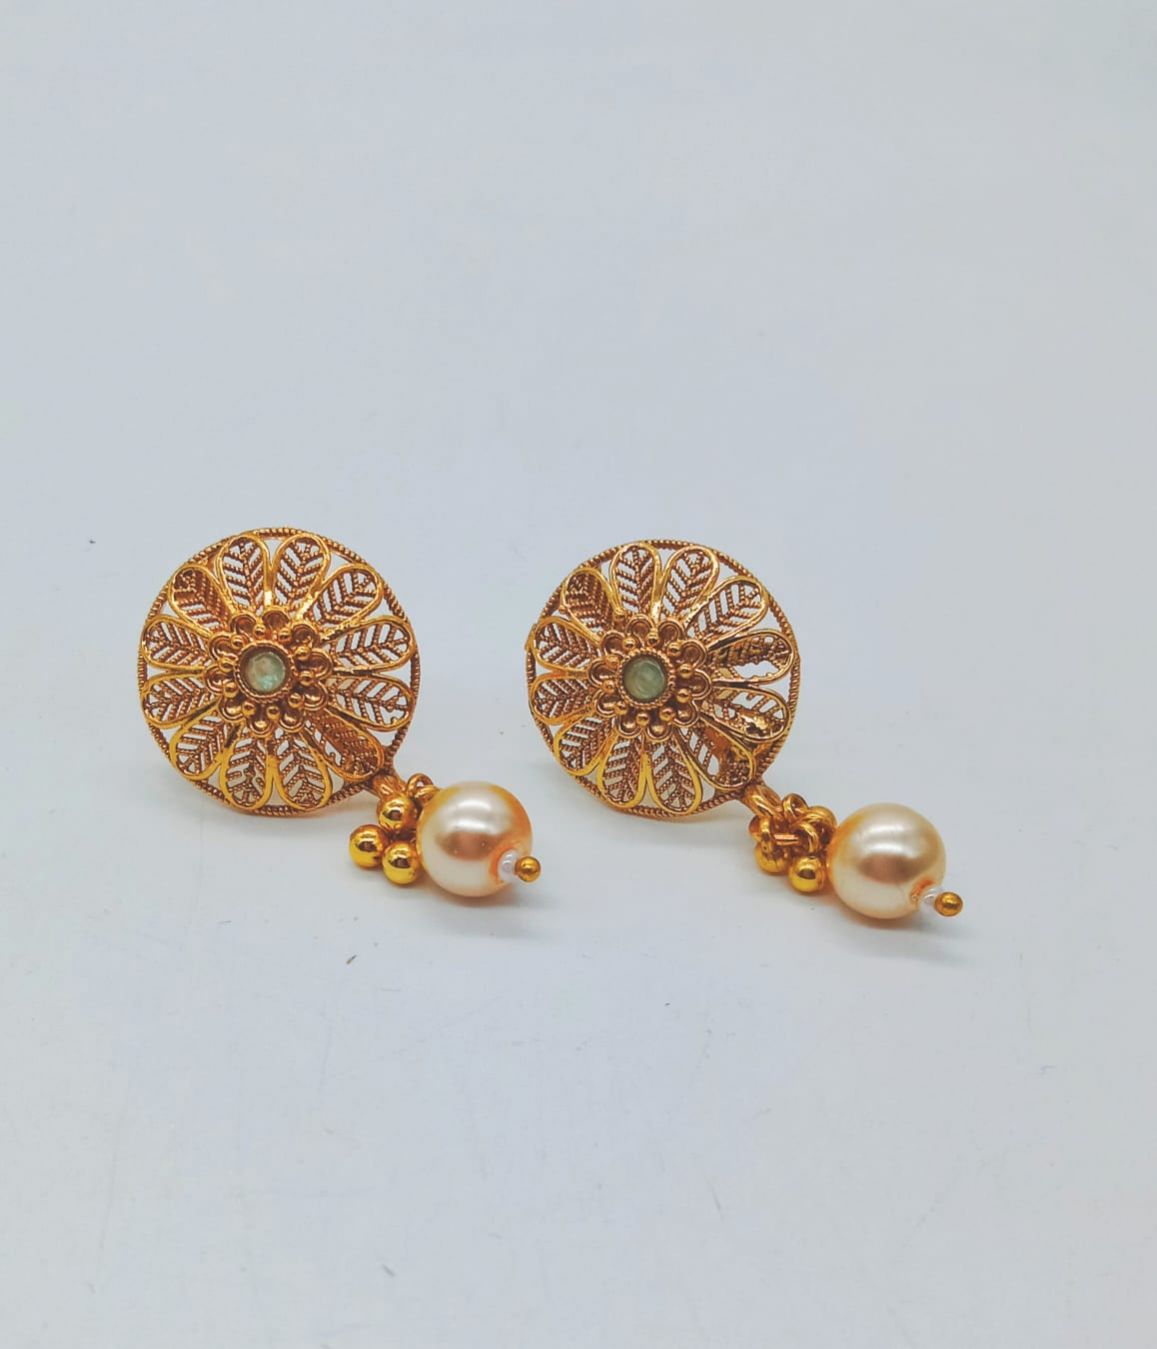 Shop Gold Alloy Kundan Stud Earrings Party Wear Online at Best Price |  Cbazaar